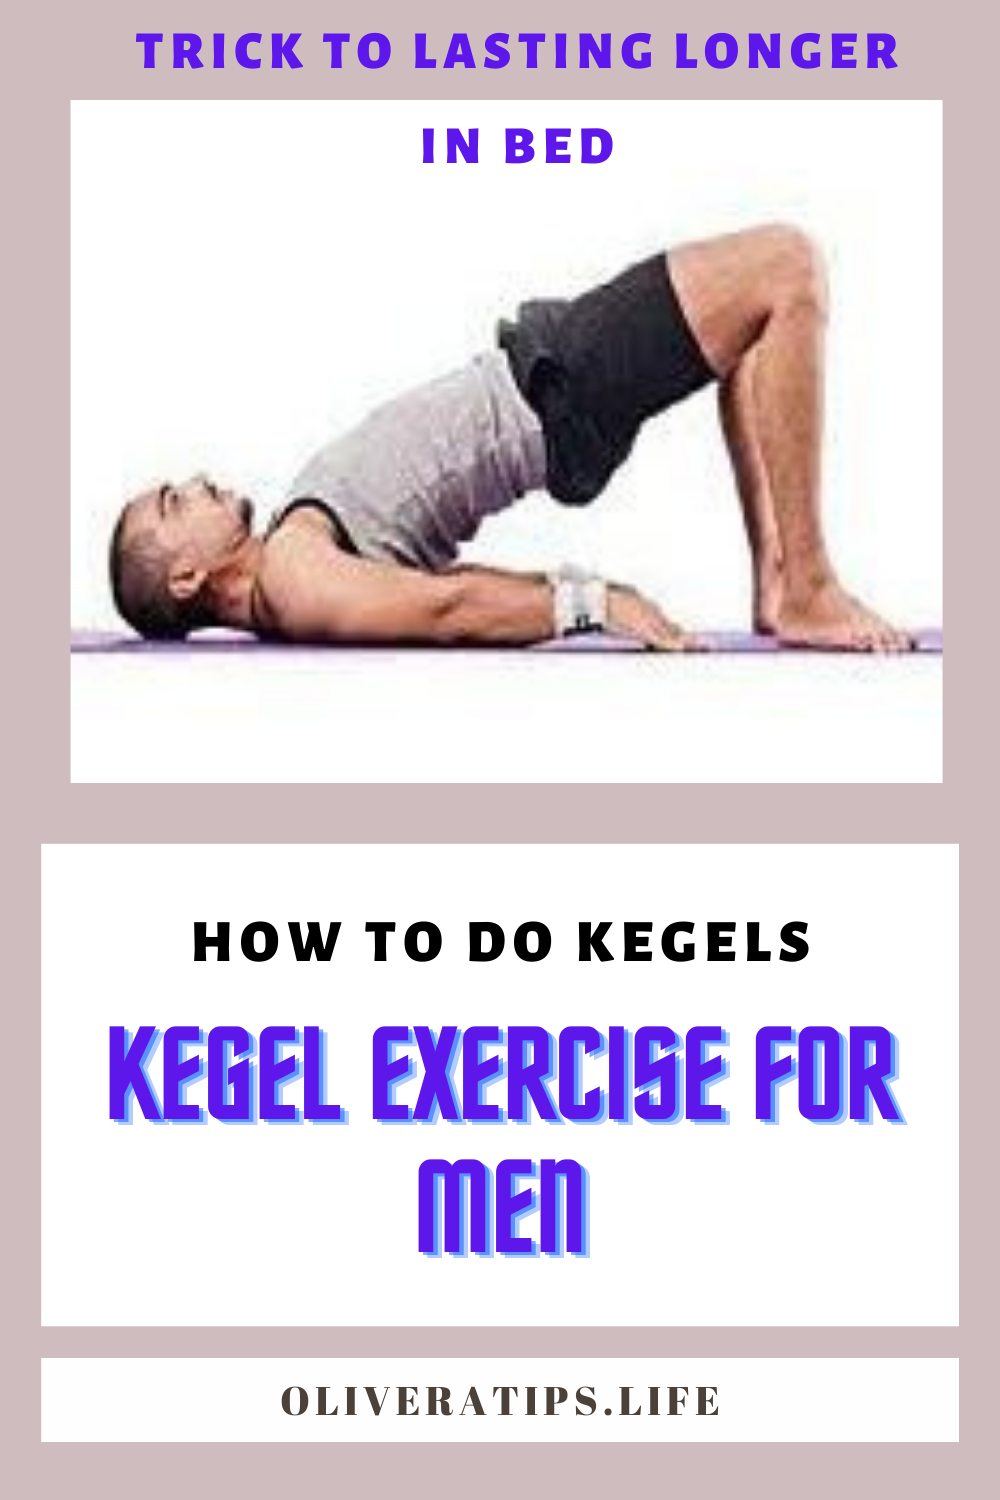 Kegel Exercises For Women Beginners Guide To Kegel Exercises For Vaginal Tightening Pelvic